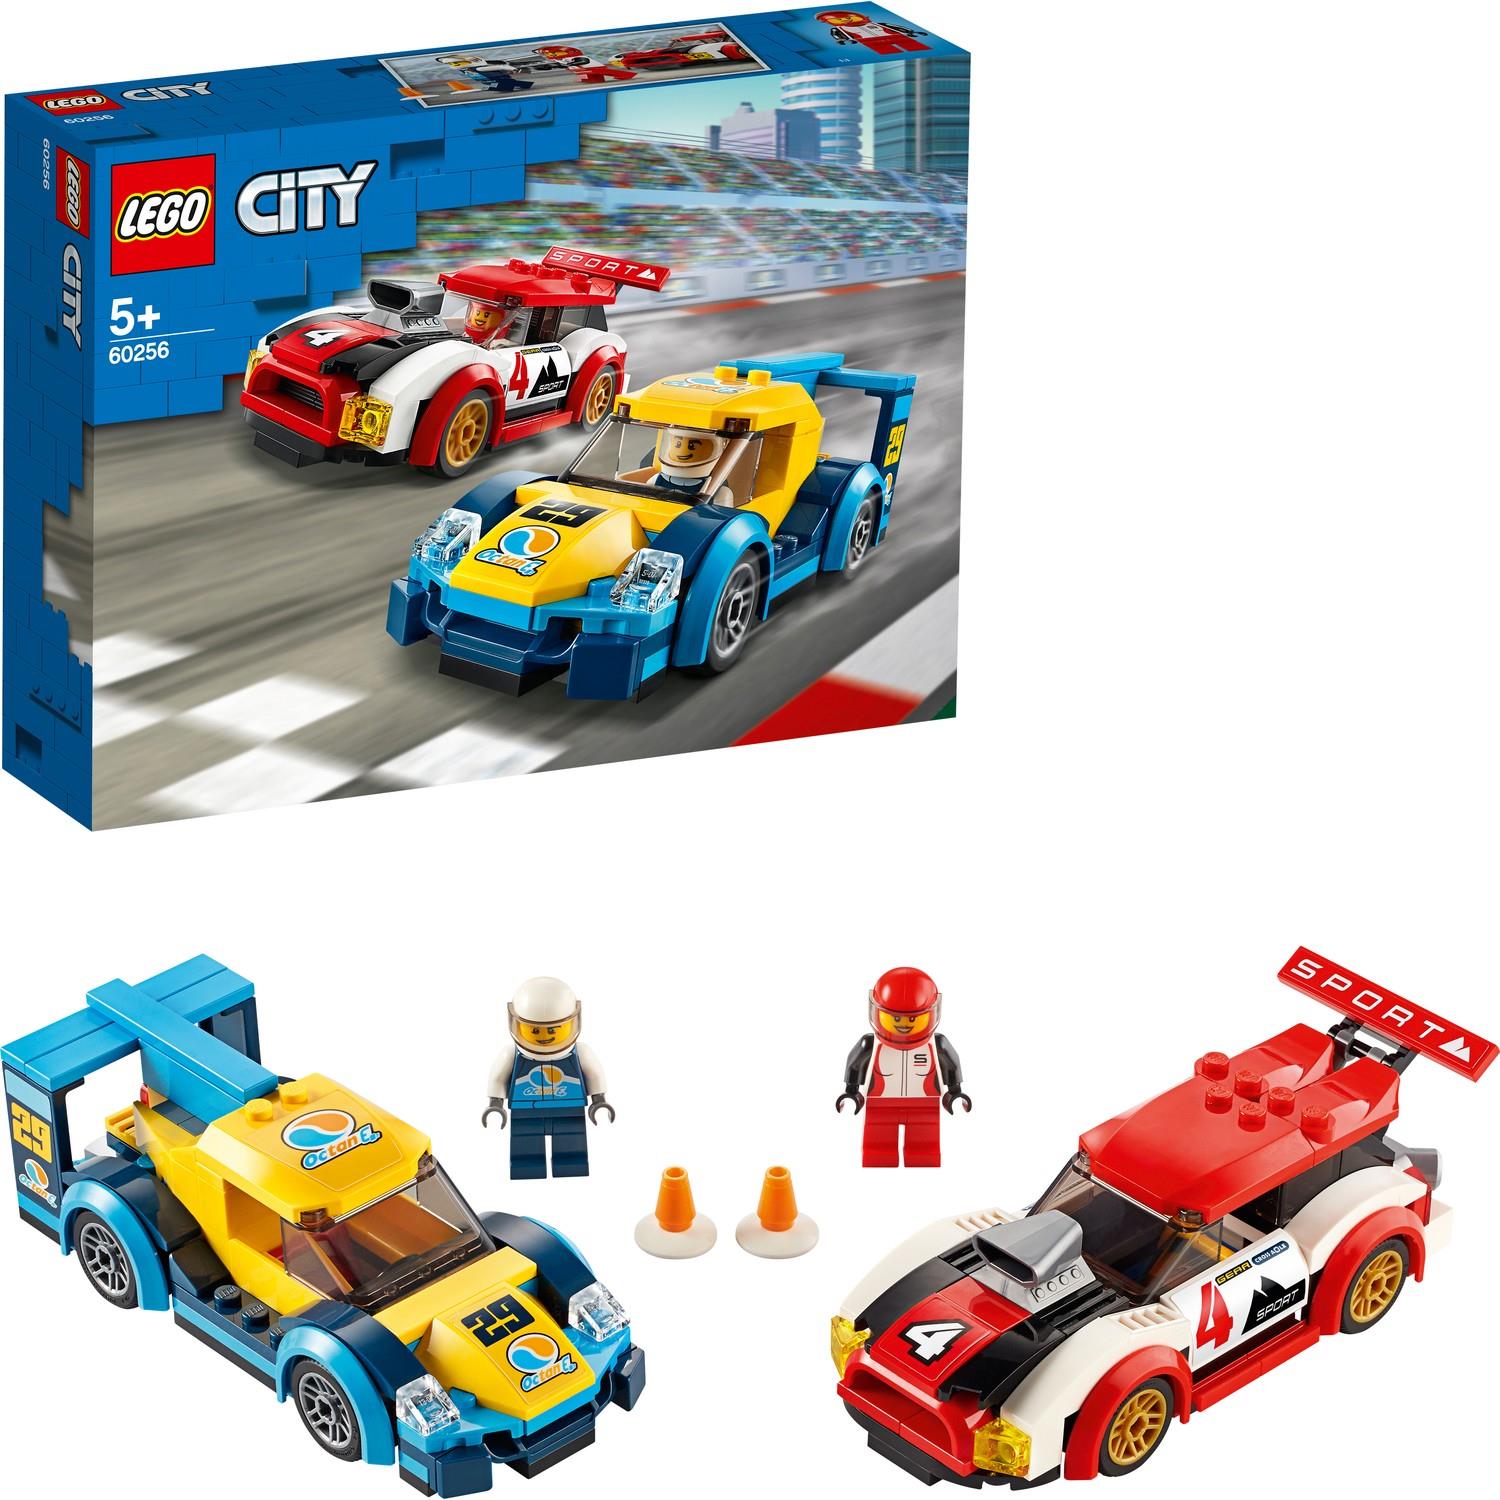 Lego City Yarış Arabaları Erkek Kız Çocuk Oyuncak Hediye Araba 60256